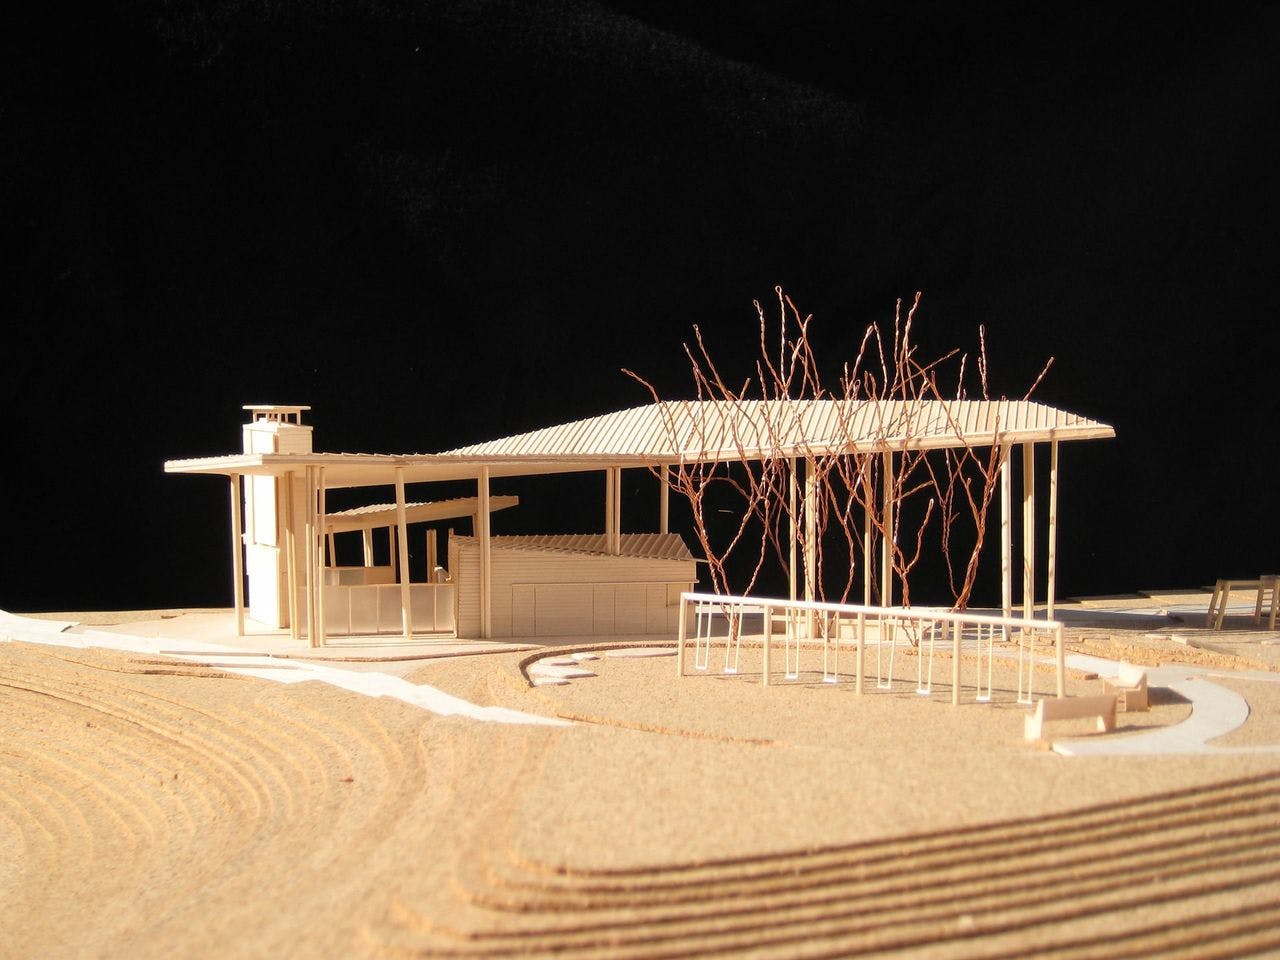 Don River Park Pavilion schematic model